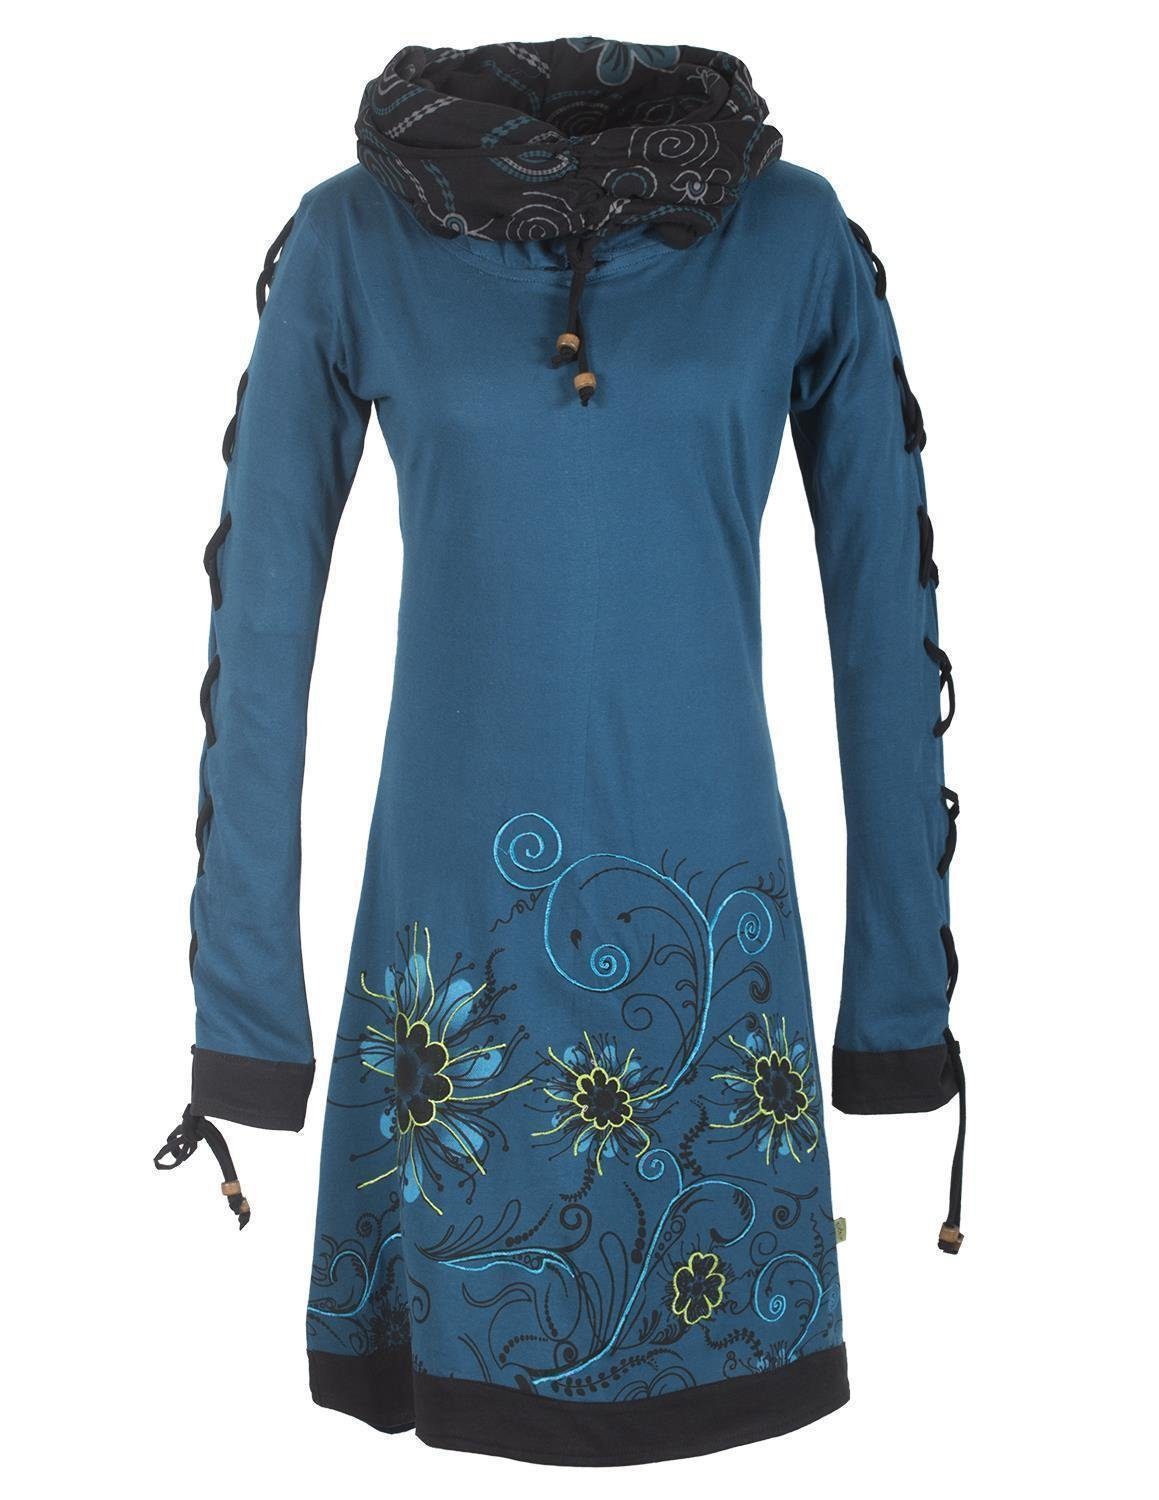 Vishes Midikleid Bedrucktes Blumen Kleid mit Schalkragen - Schnüren Ethno, Hippi, Boho, Goa Style türkis